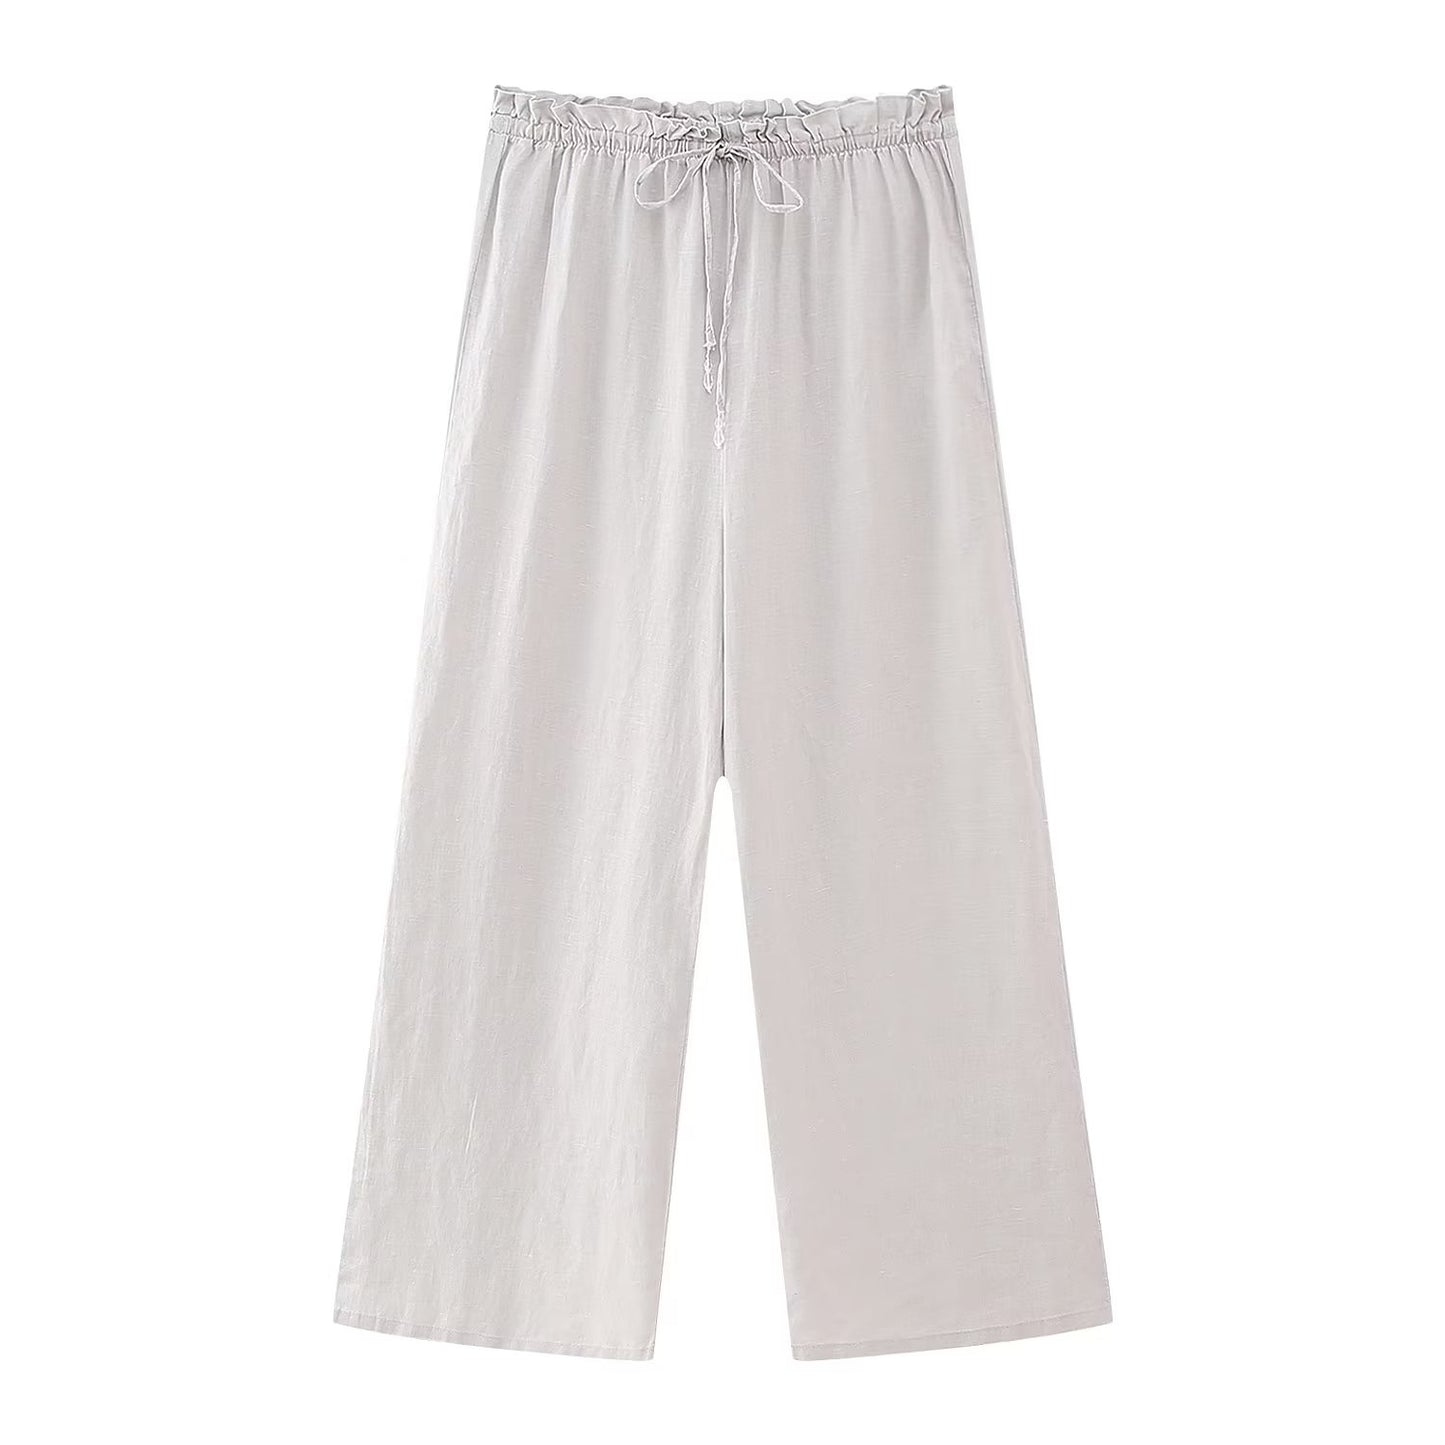 Summer Women Clothing Linen Hanging Collar Top High Waist Loose Wide Leg Pants Sets